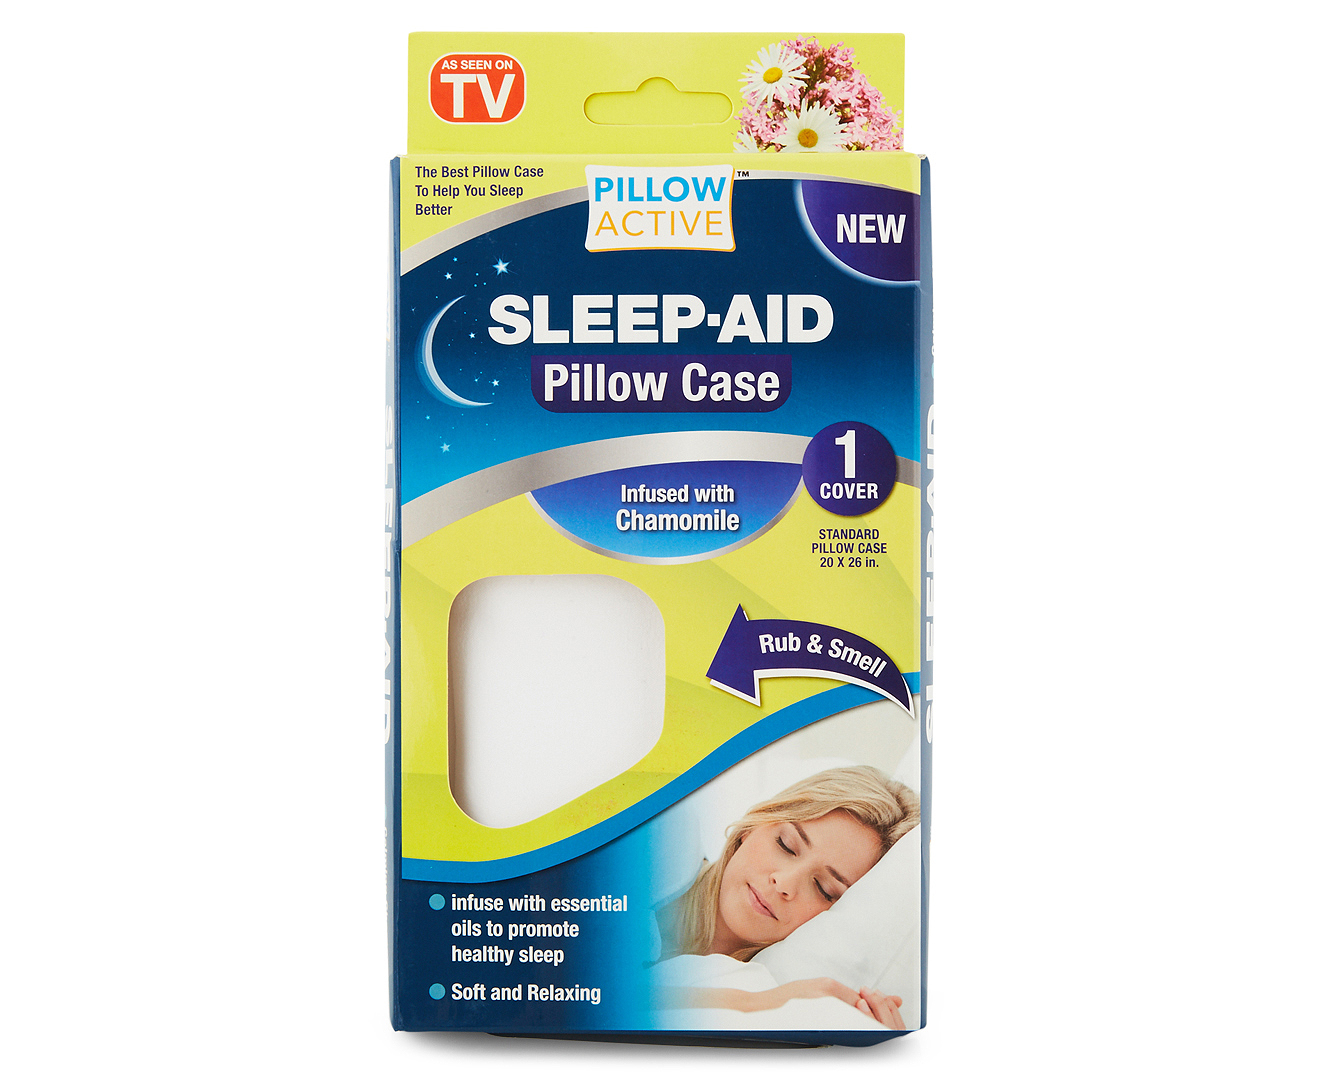 Pillow Active Sleep Aid Pillow Case - White | Catch.com.au